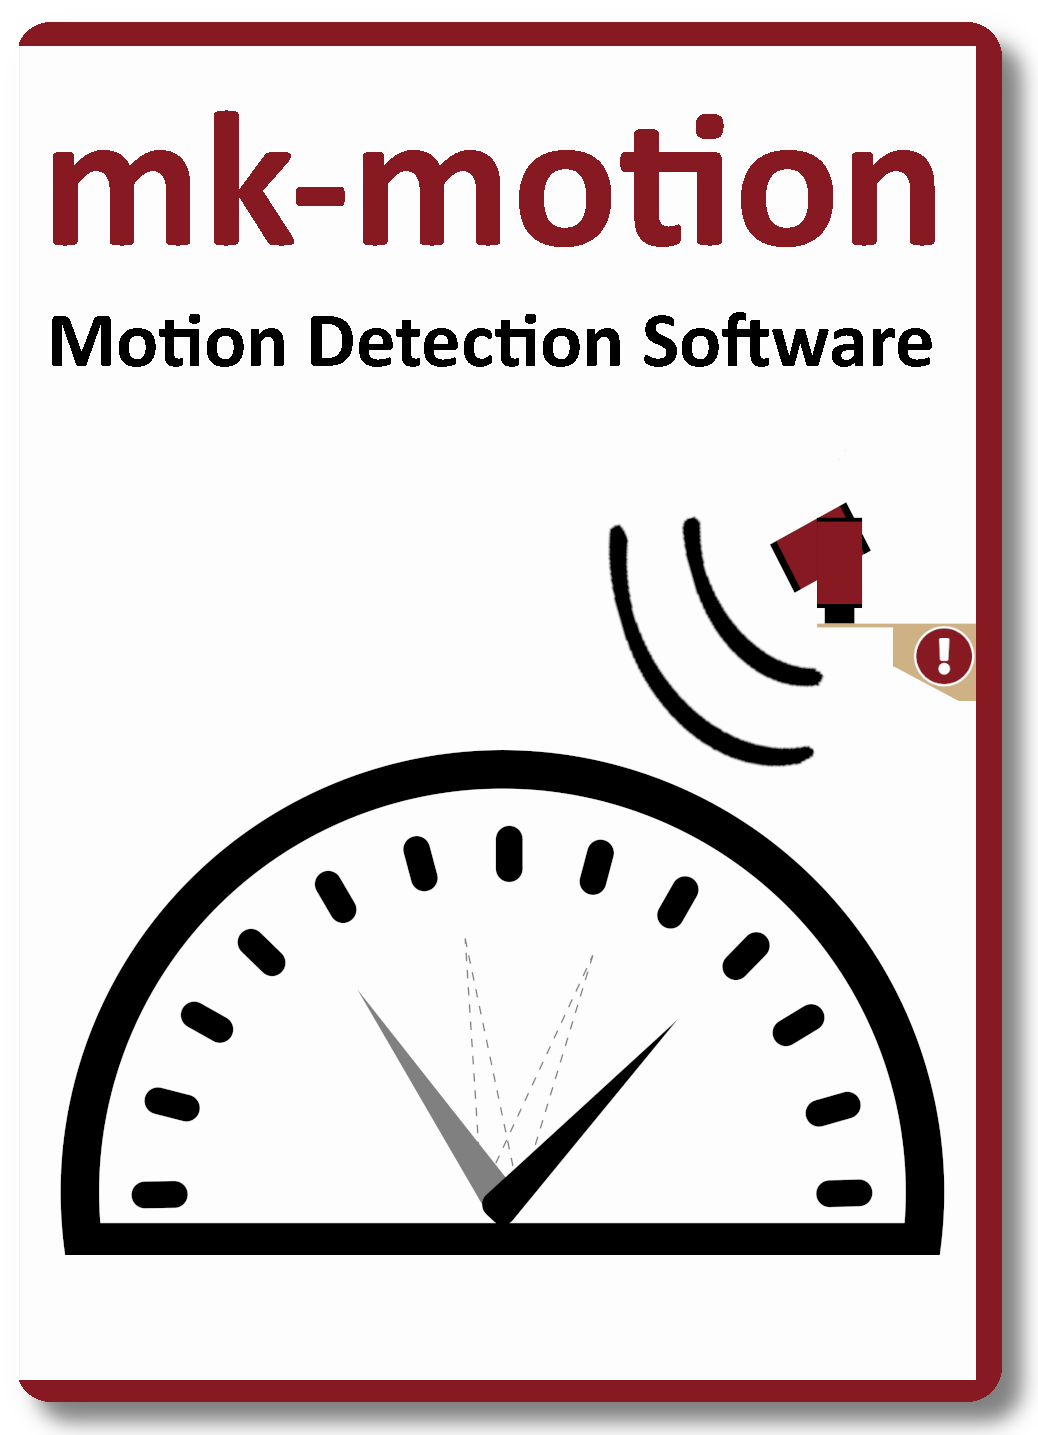 mk-motion Motion Detection Software from mk-messtechnik GmbH